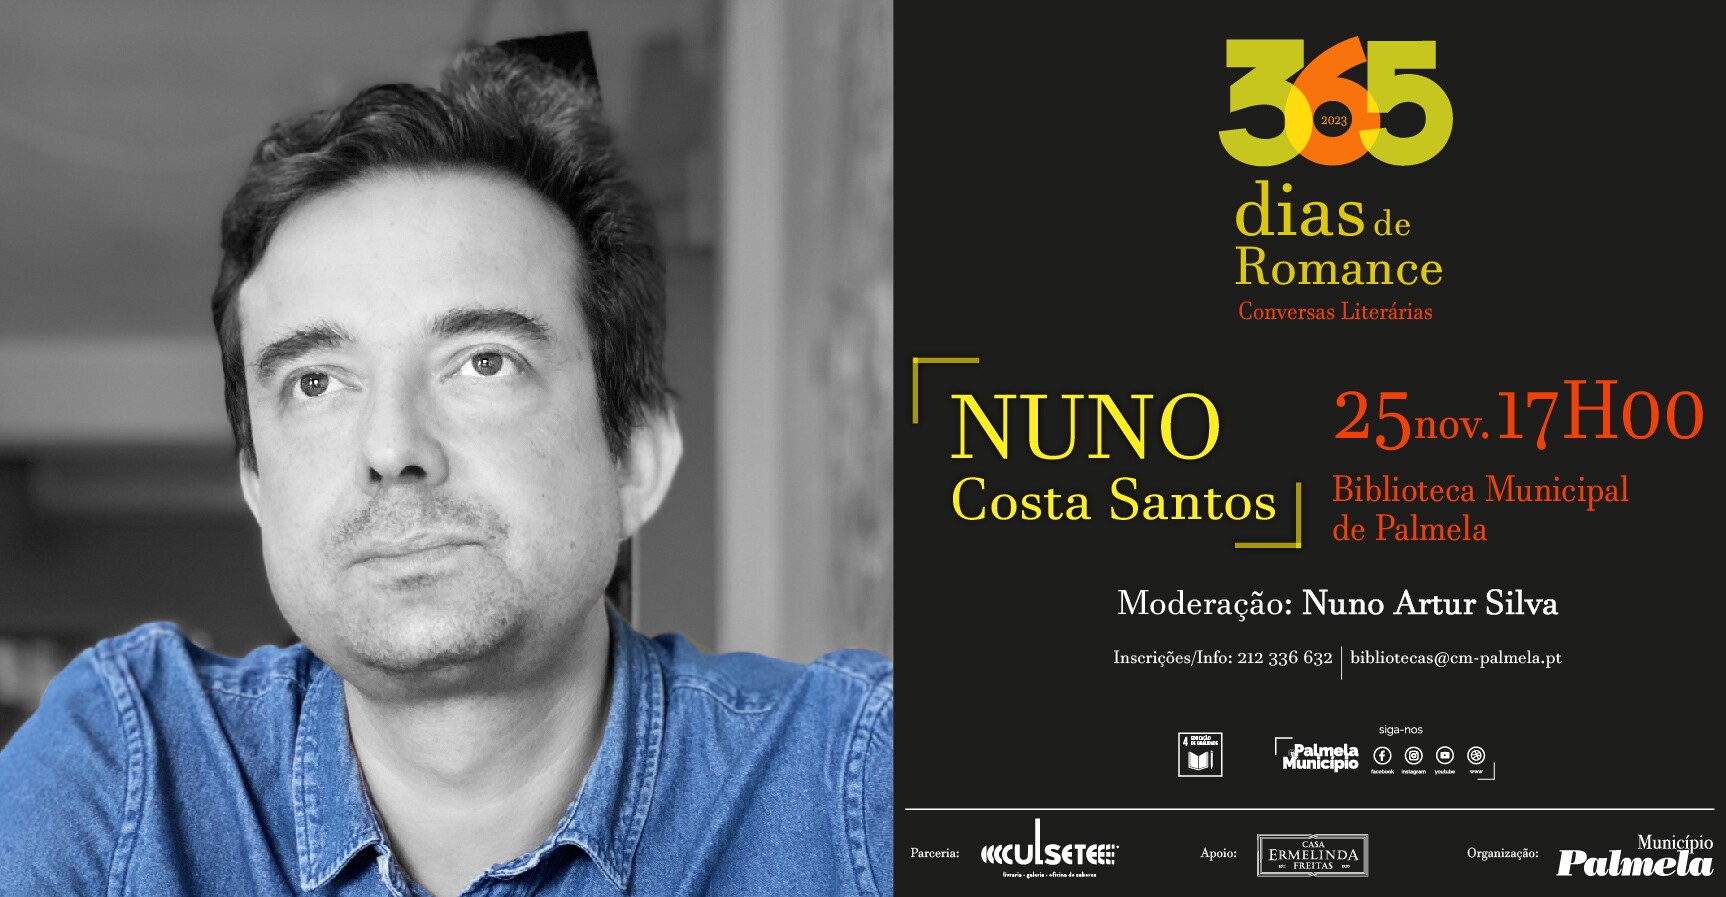 “365 Dias de Romance”: Nuno Costa Santos é o próximo autor convidado